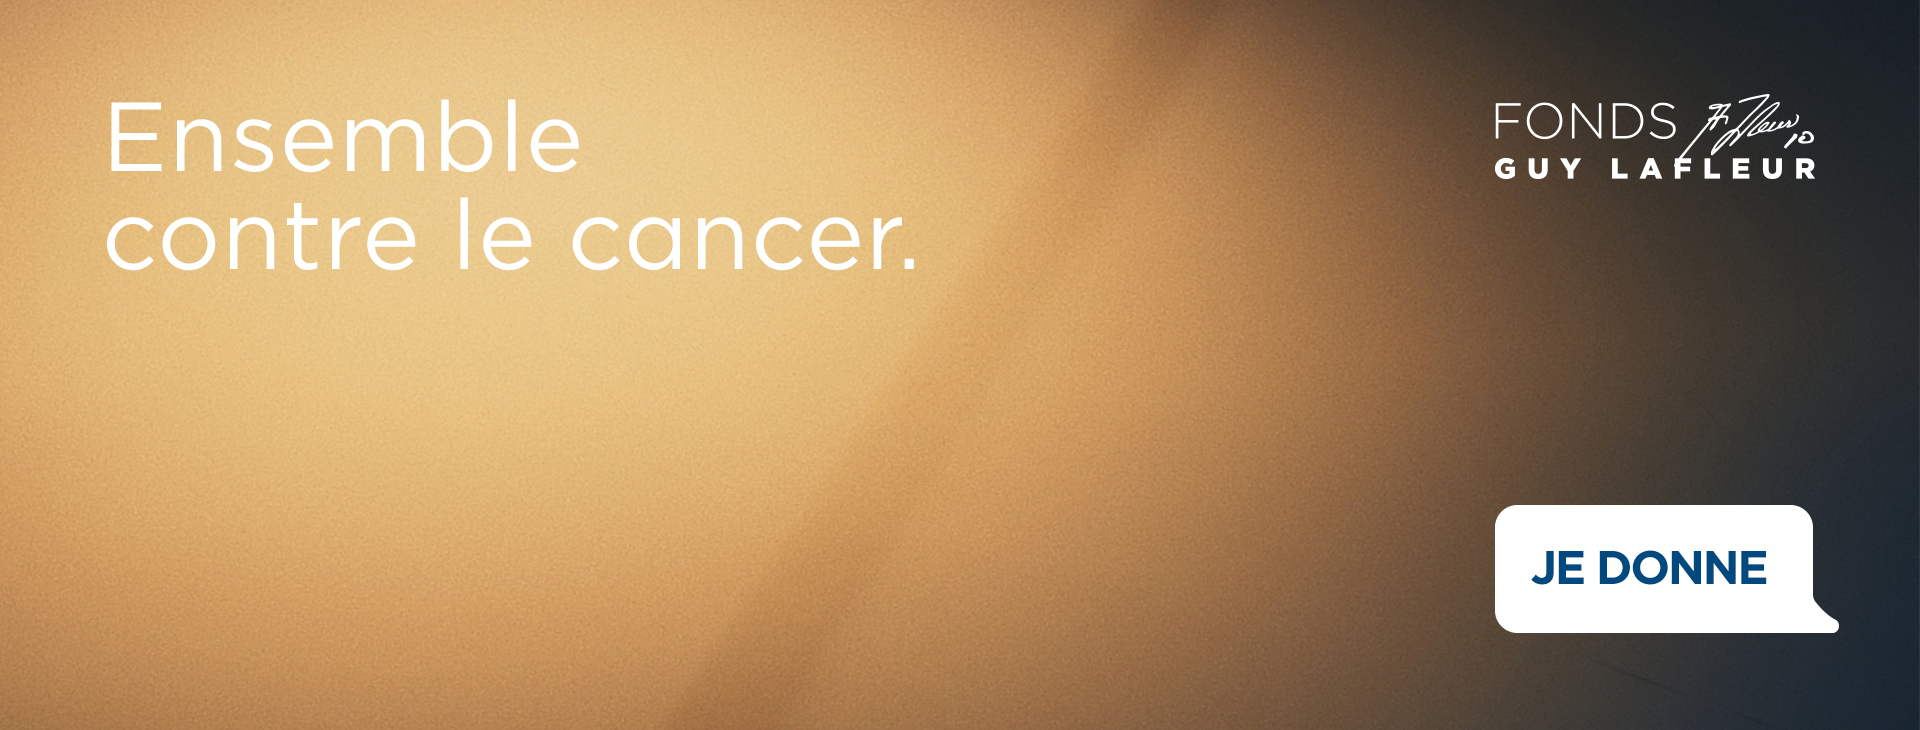 Campagne Ensemble contre le cancer